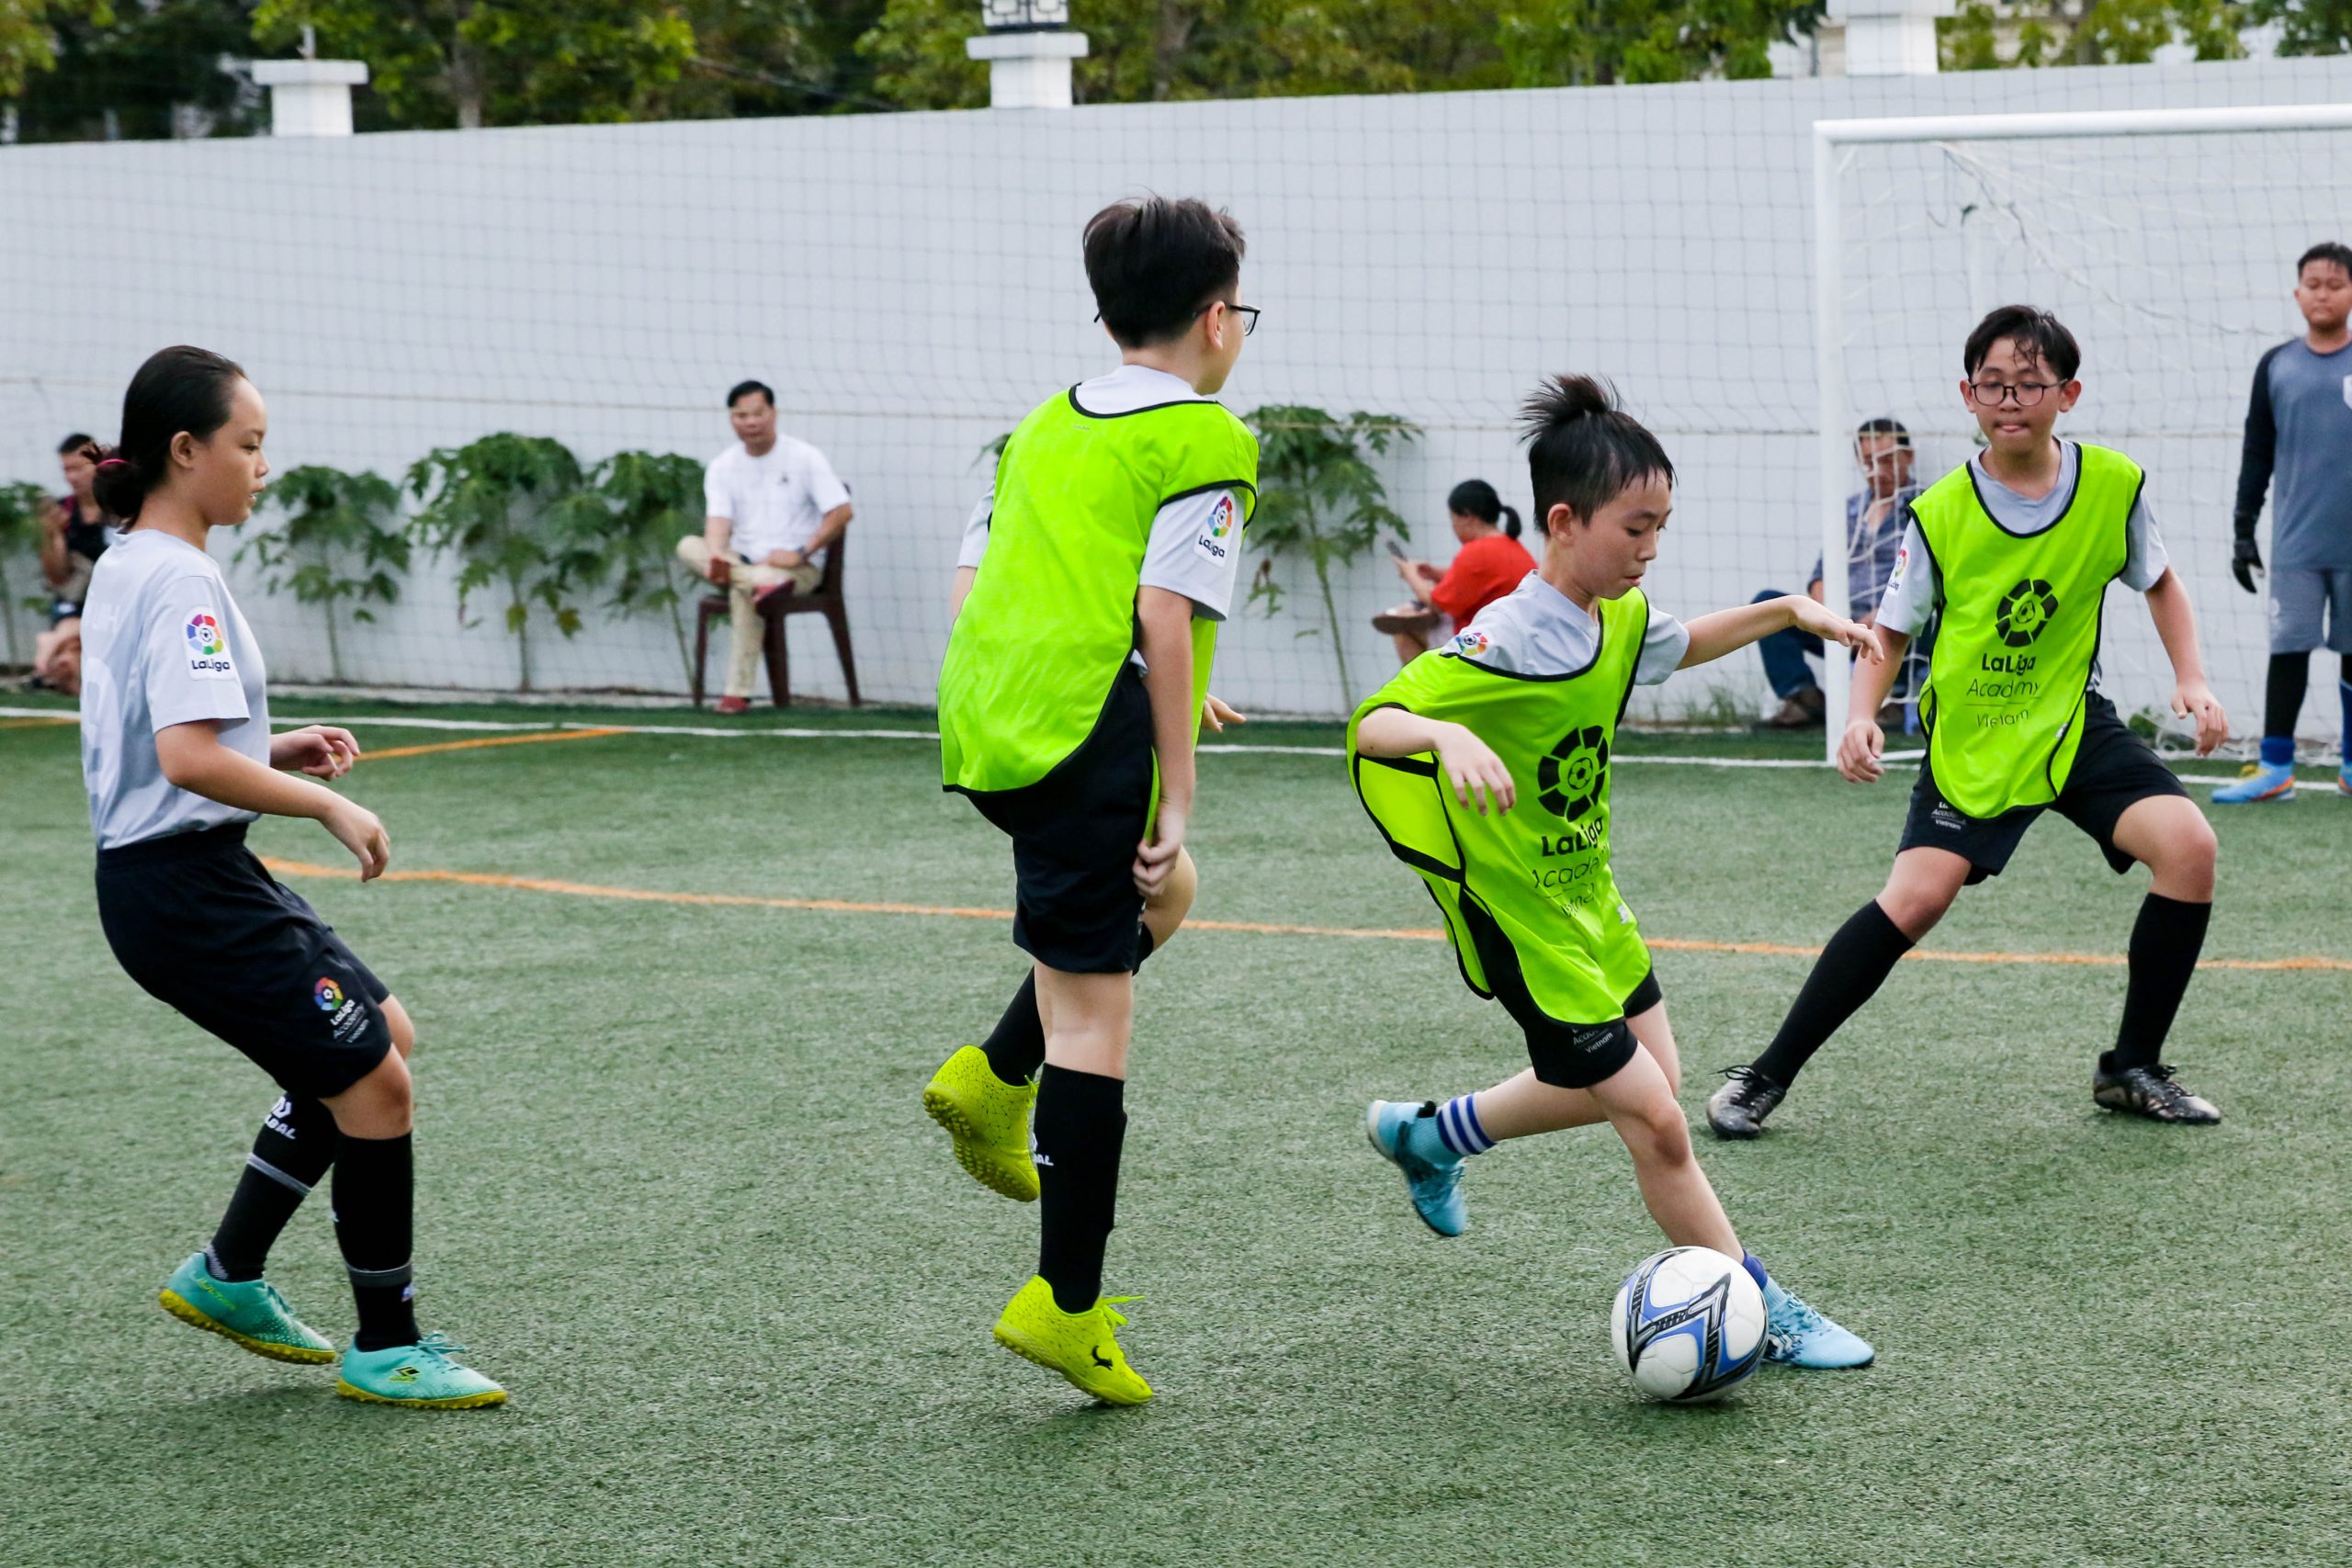 IMG 9995 scaled | Laliga Việt Nam - Ươm mầm tài năng bóng đá trẻ